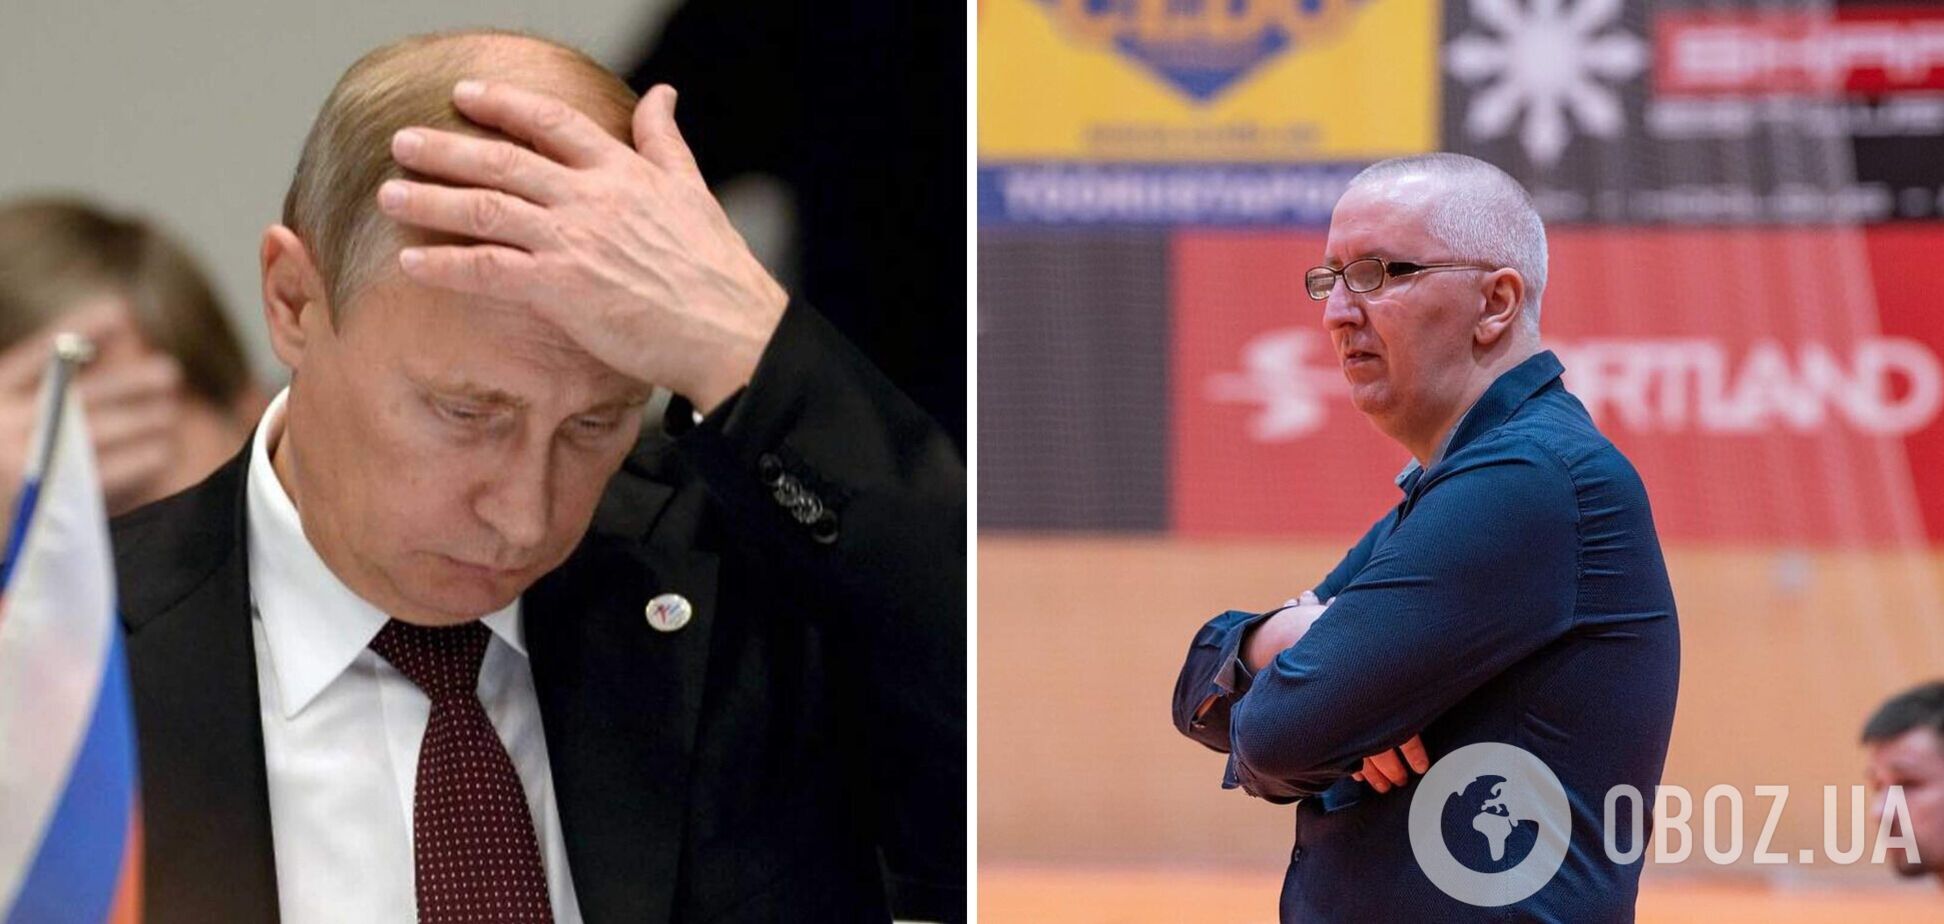 'Борется за свободу всех нас': сербский тренер присягнул на верность Путину. Его выгнали из эстонской команды